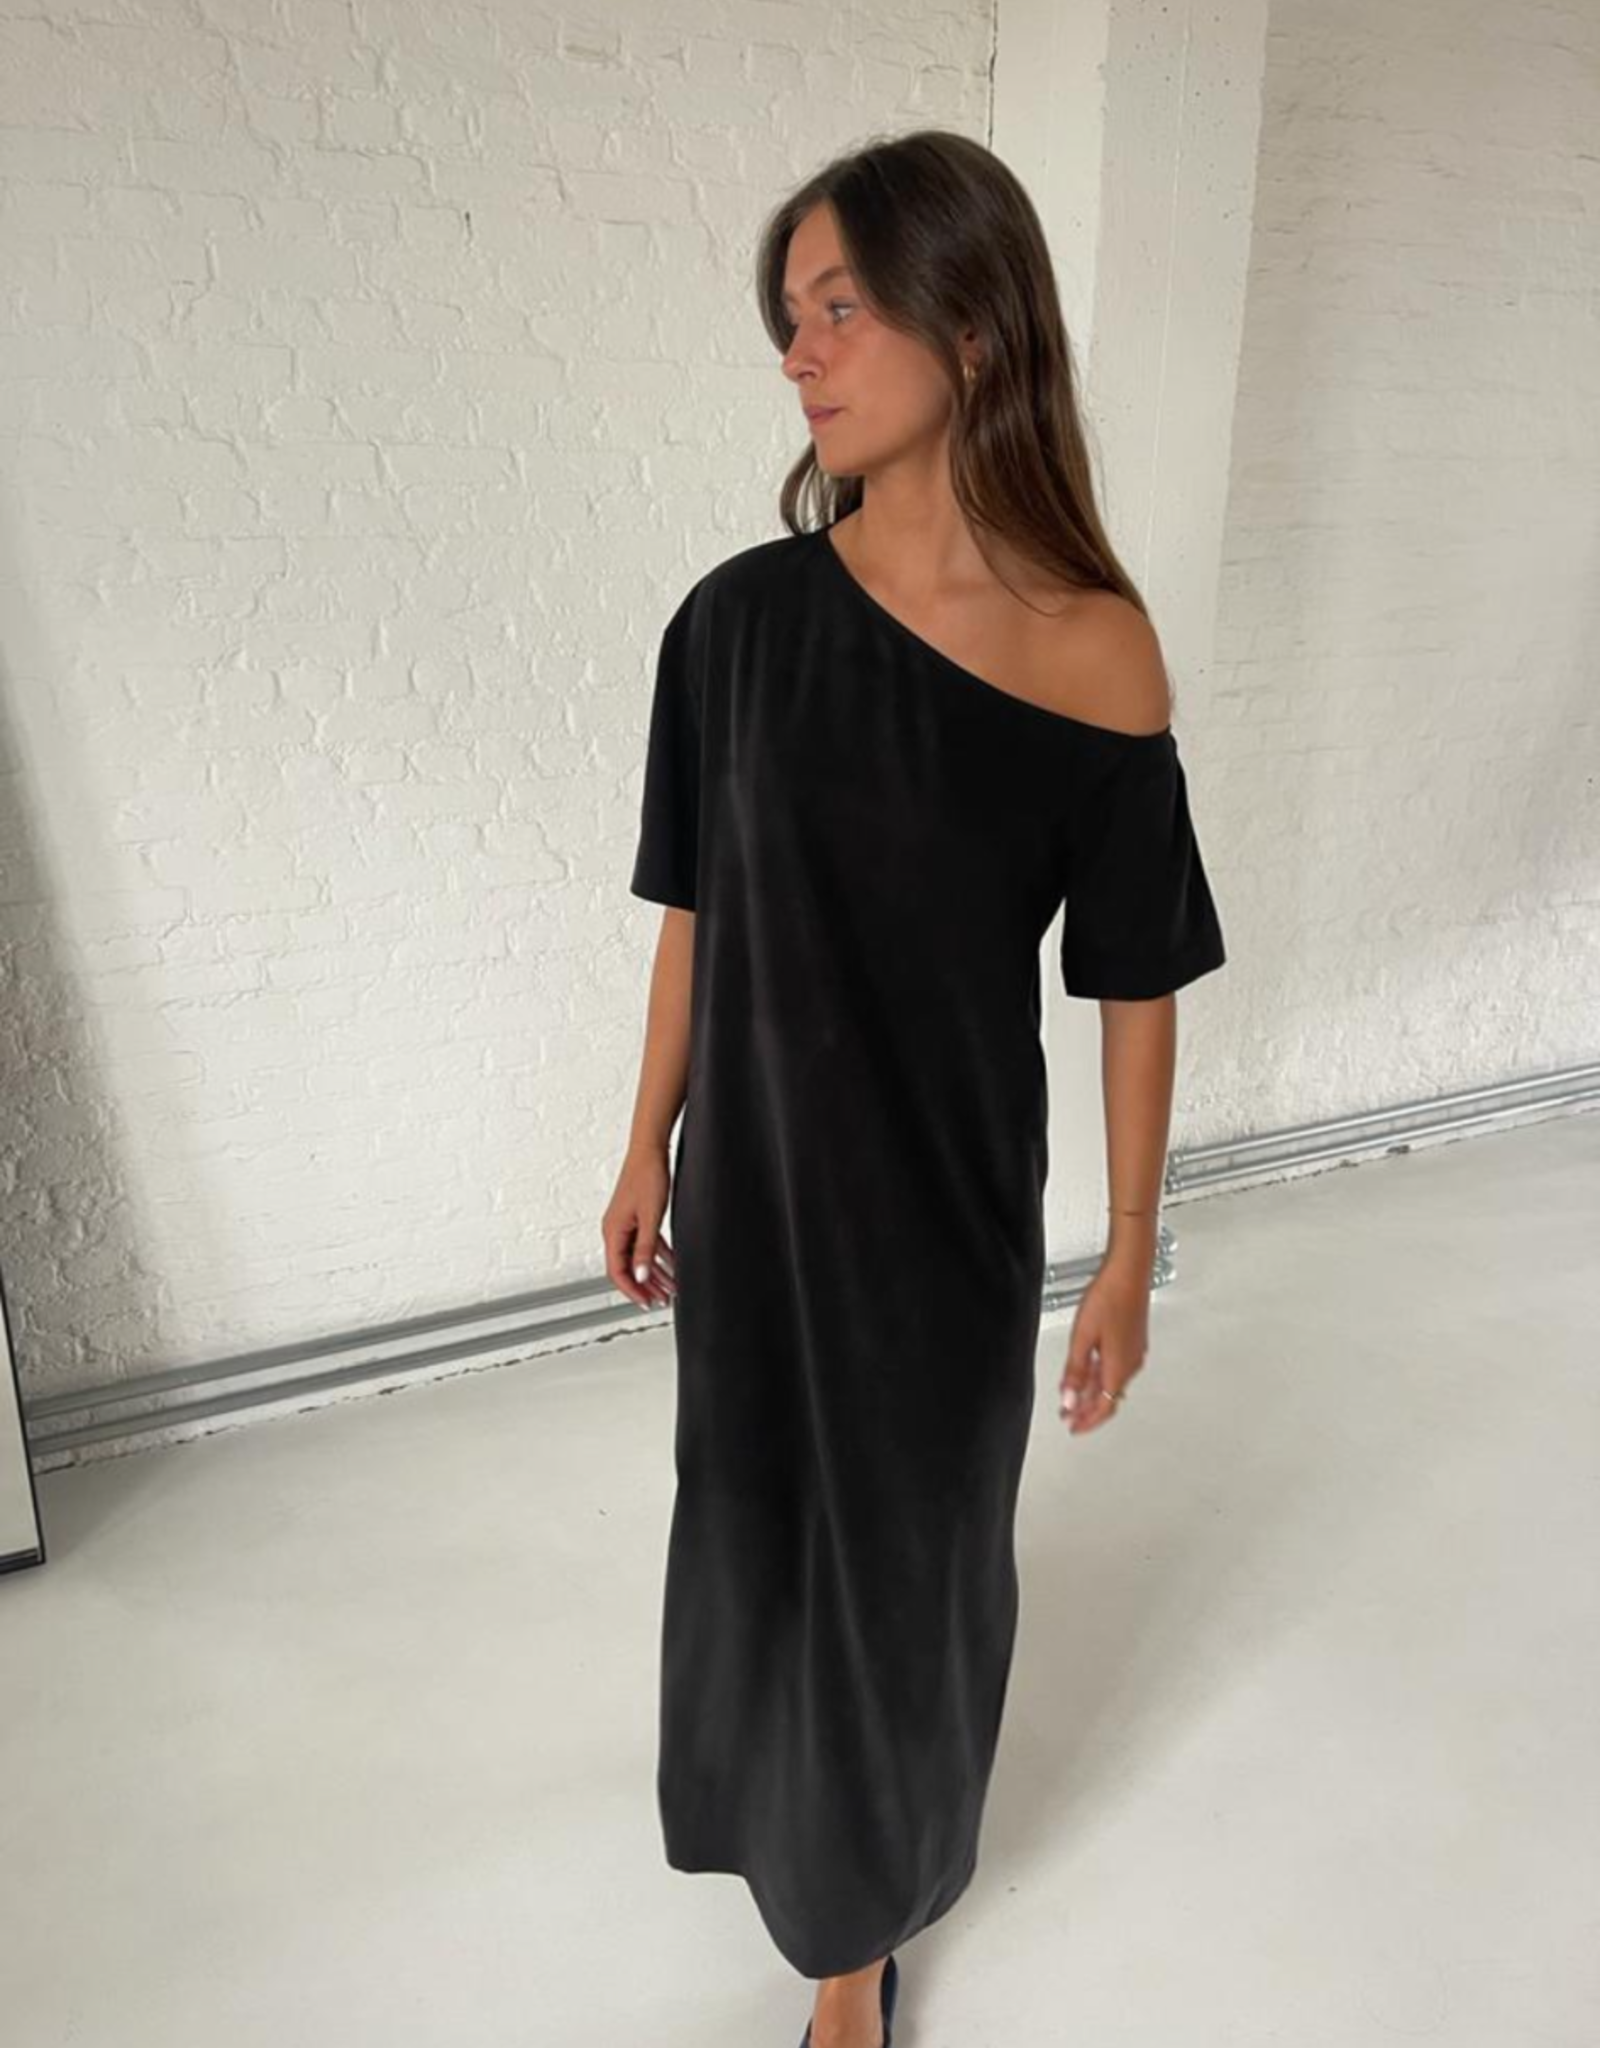 Liv The Label Rome Dress Black